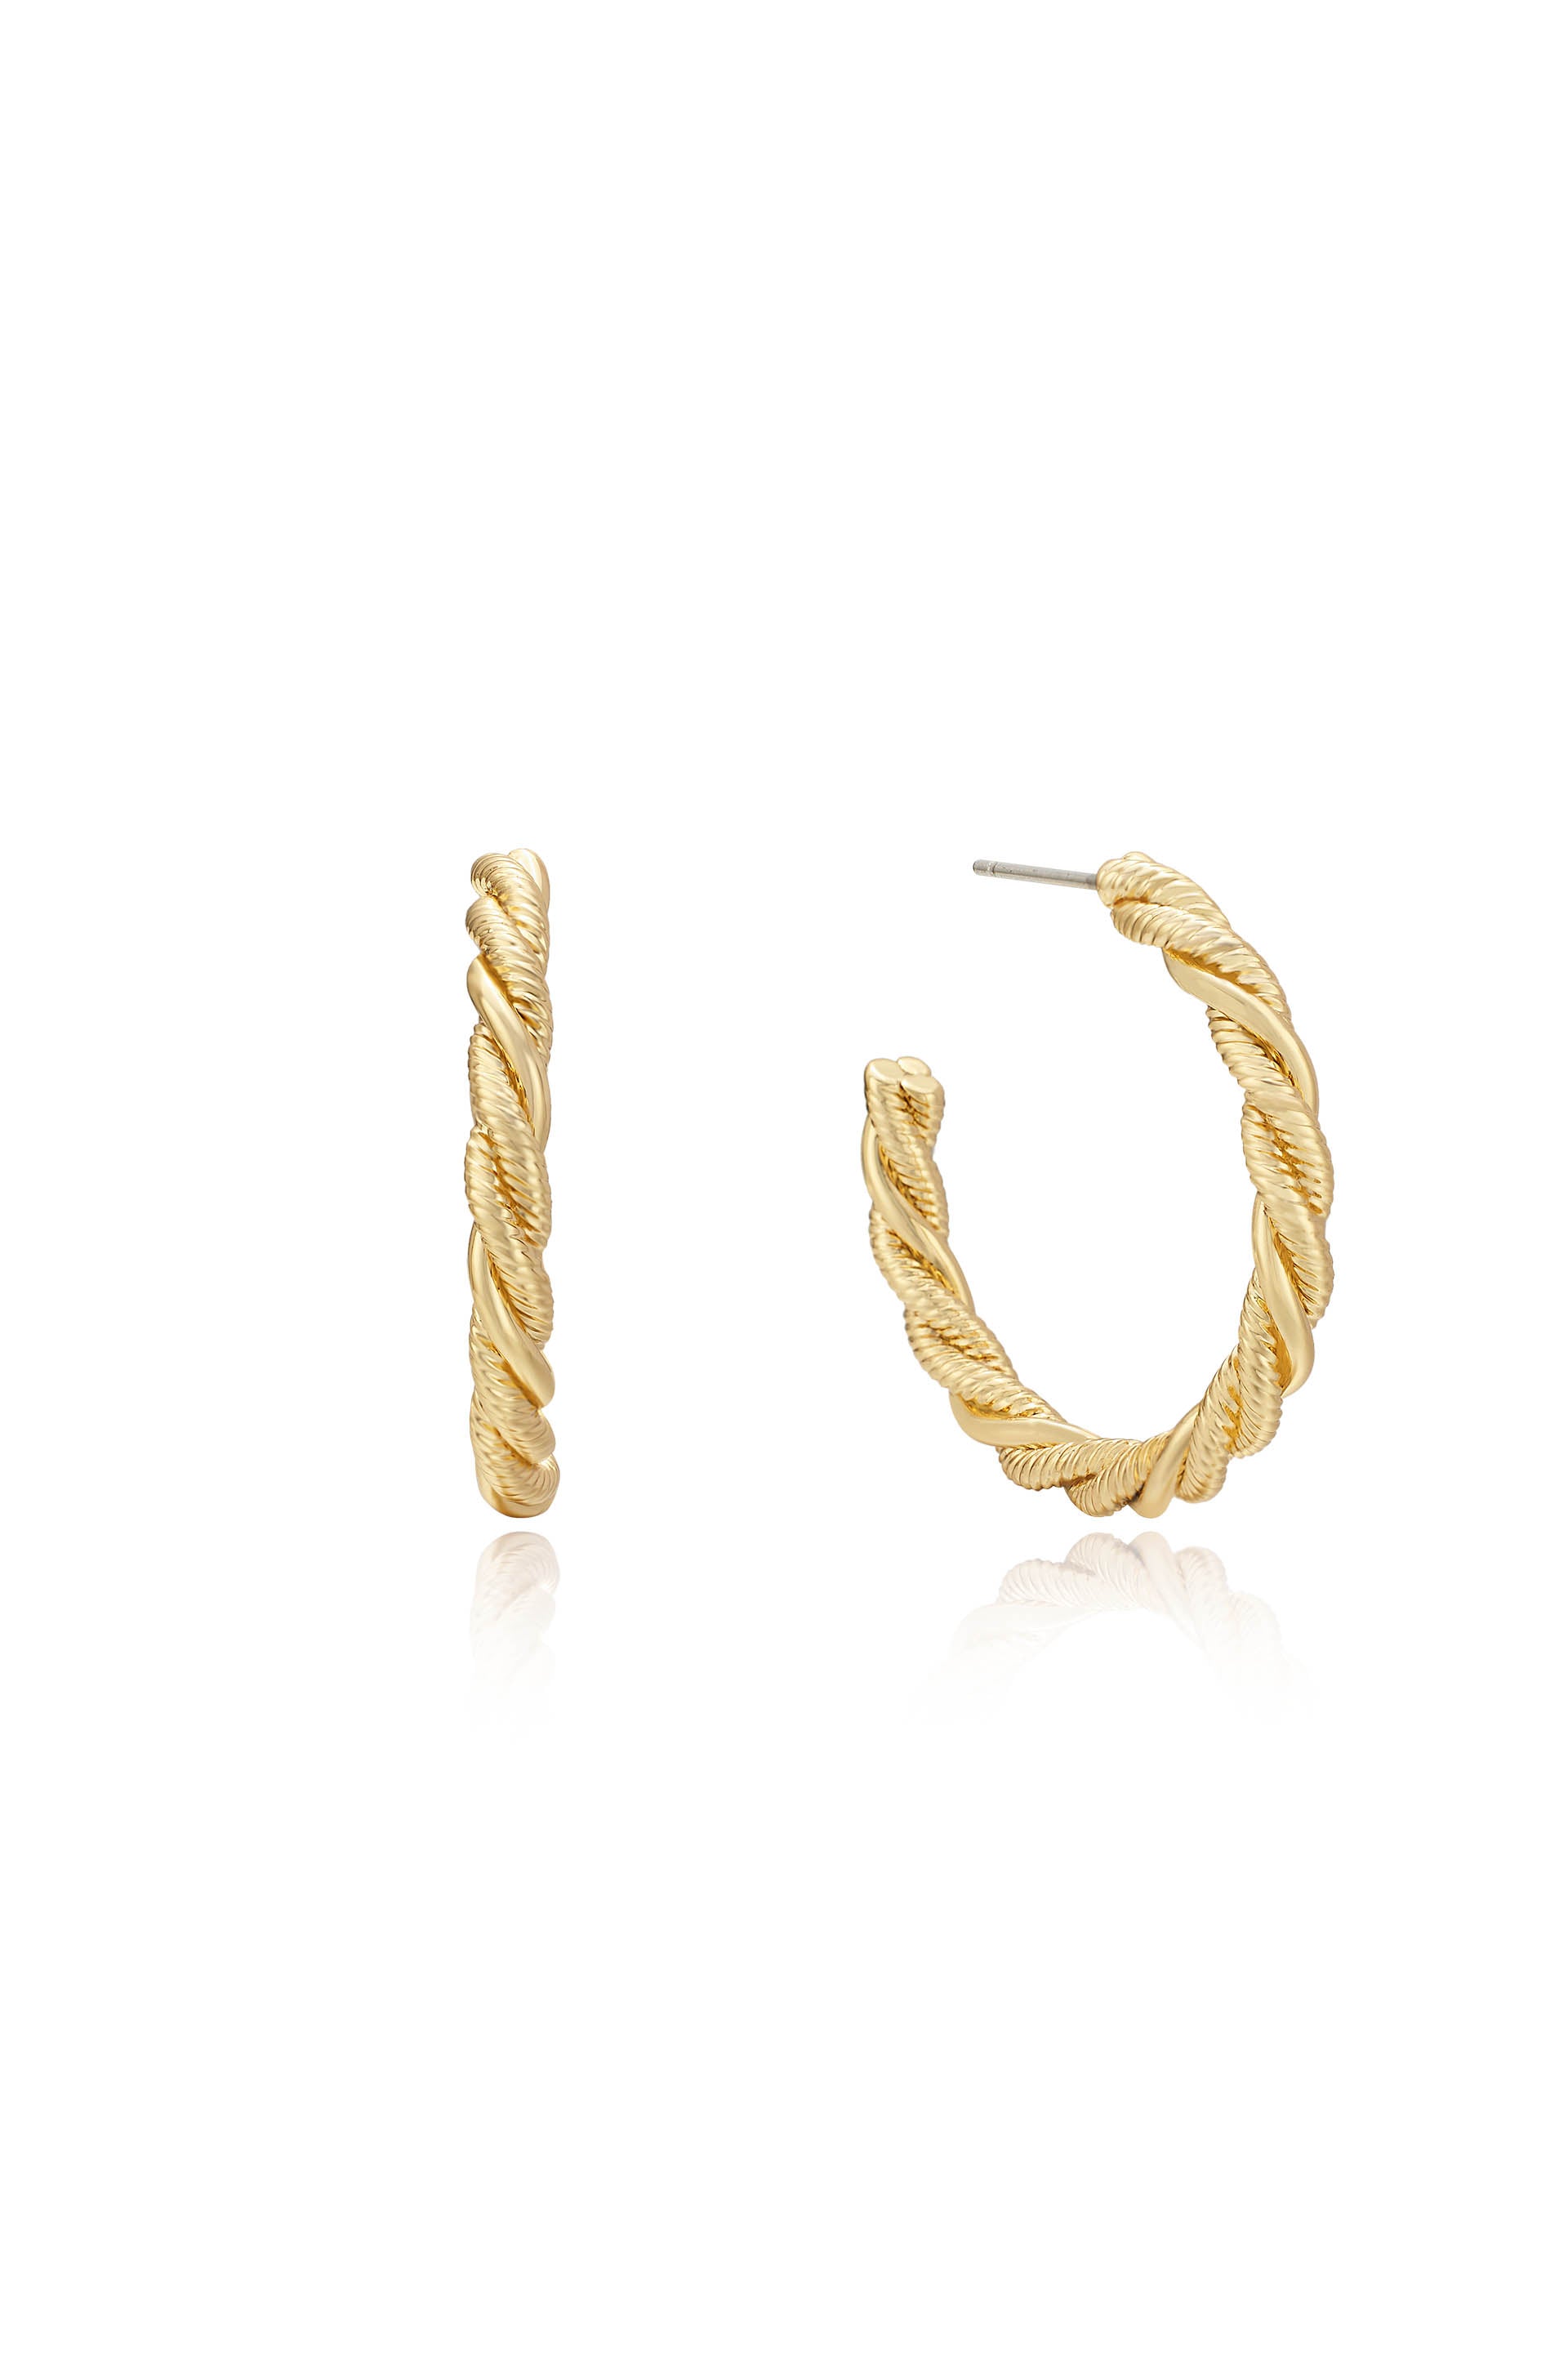 Spun Strands 18k Gold Plated Hoop Earrings